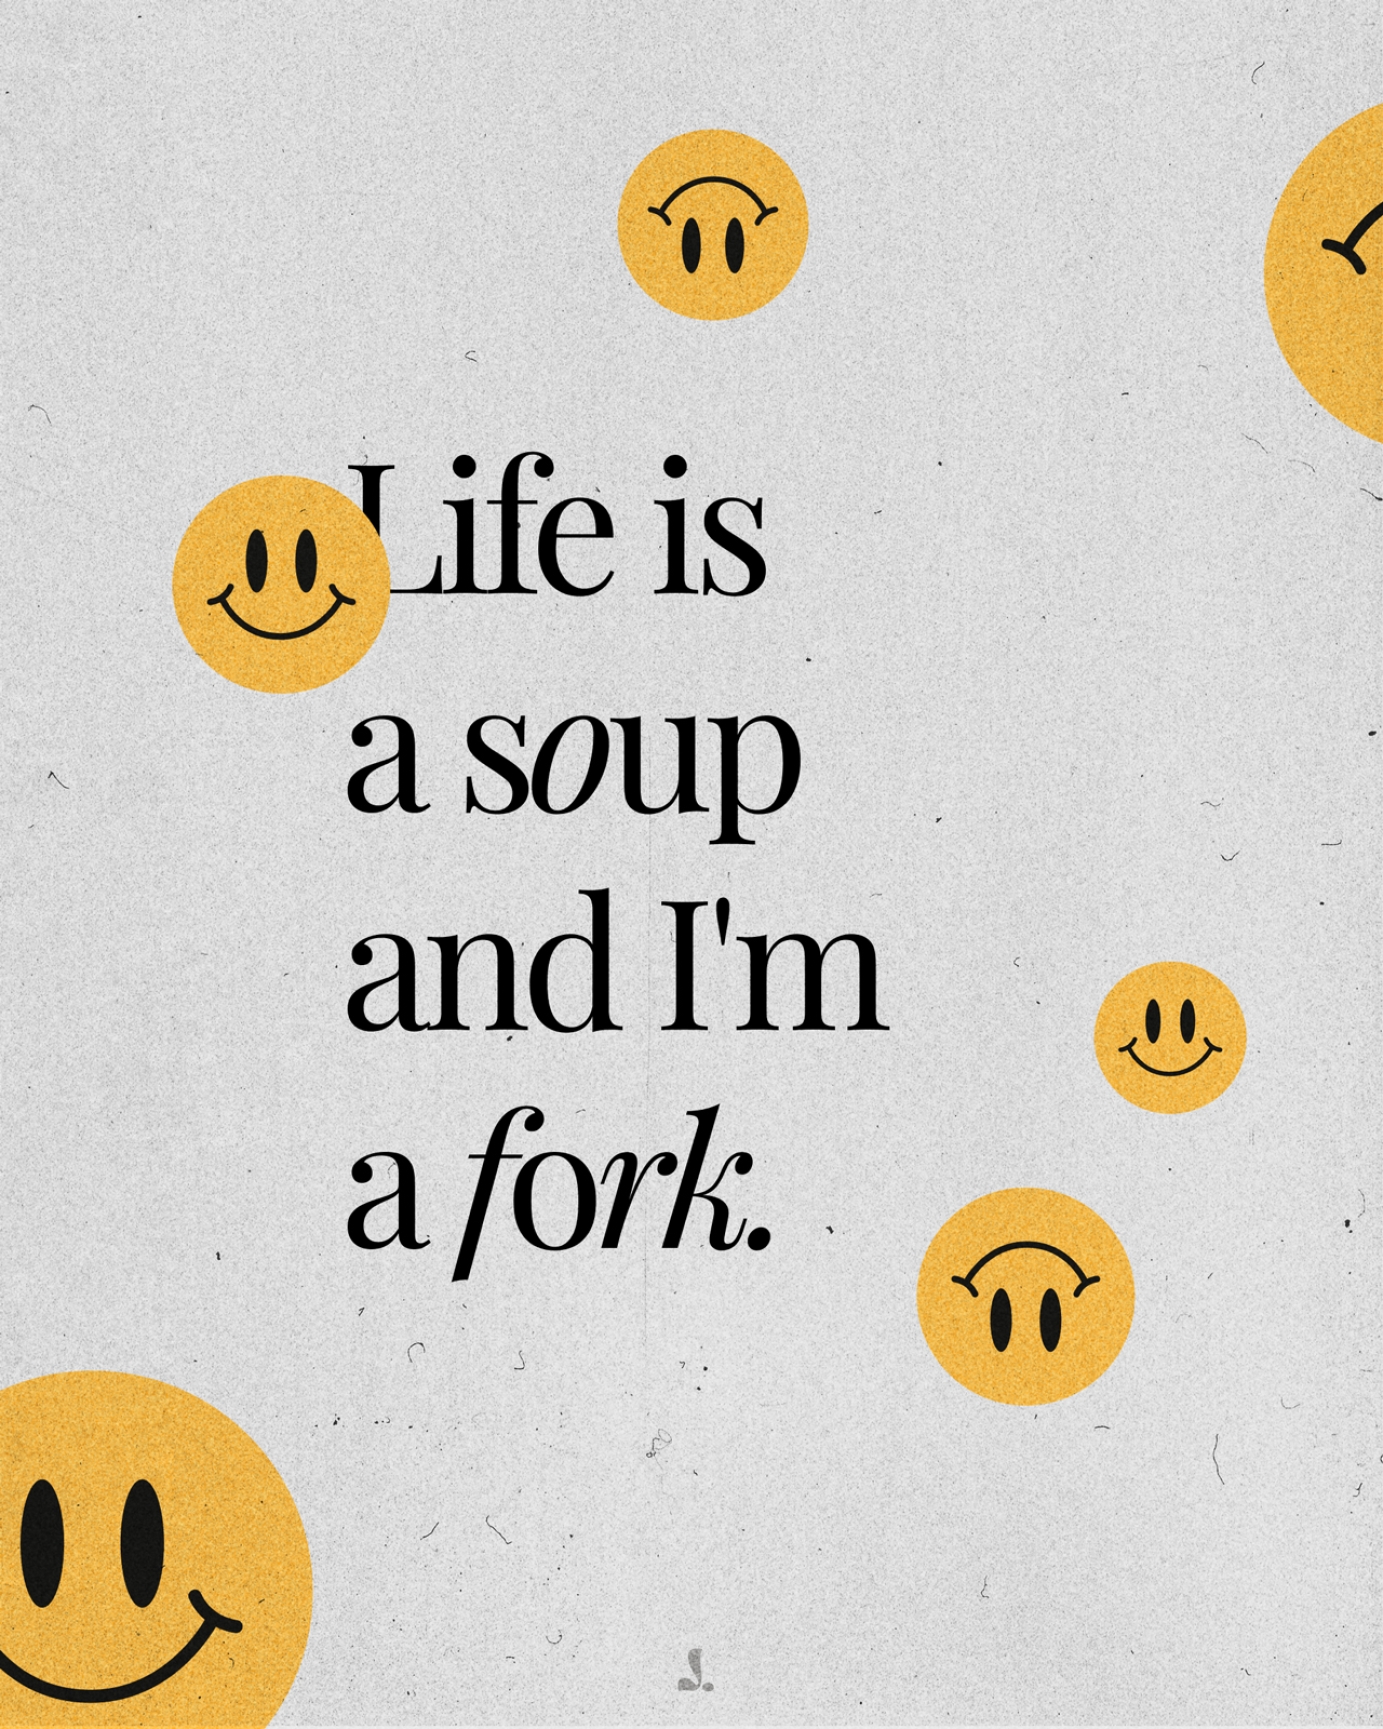 Life is a soup and I'm a fork, a quote by Kim Namjoon (BTS)